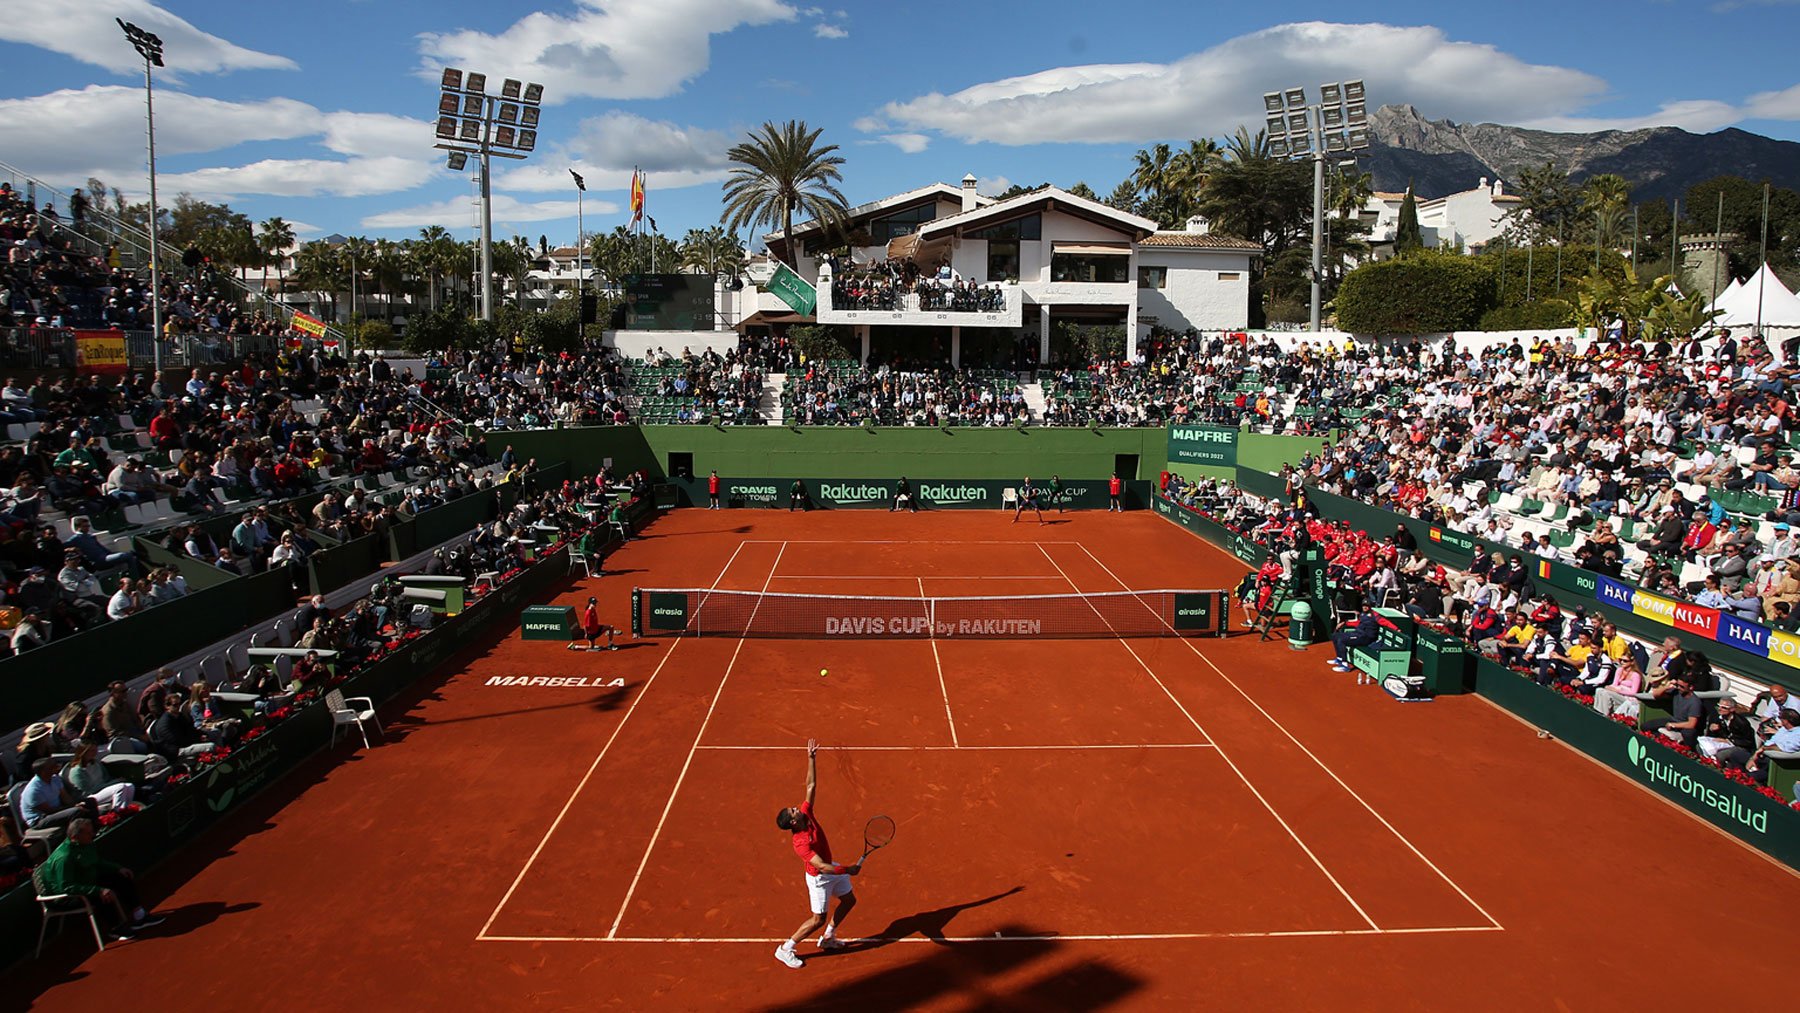 Pista central del Club de Tenis Puente Romano, durante la disputa de la Copa Davis entre España y Rumanía (Efe)